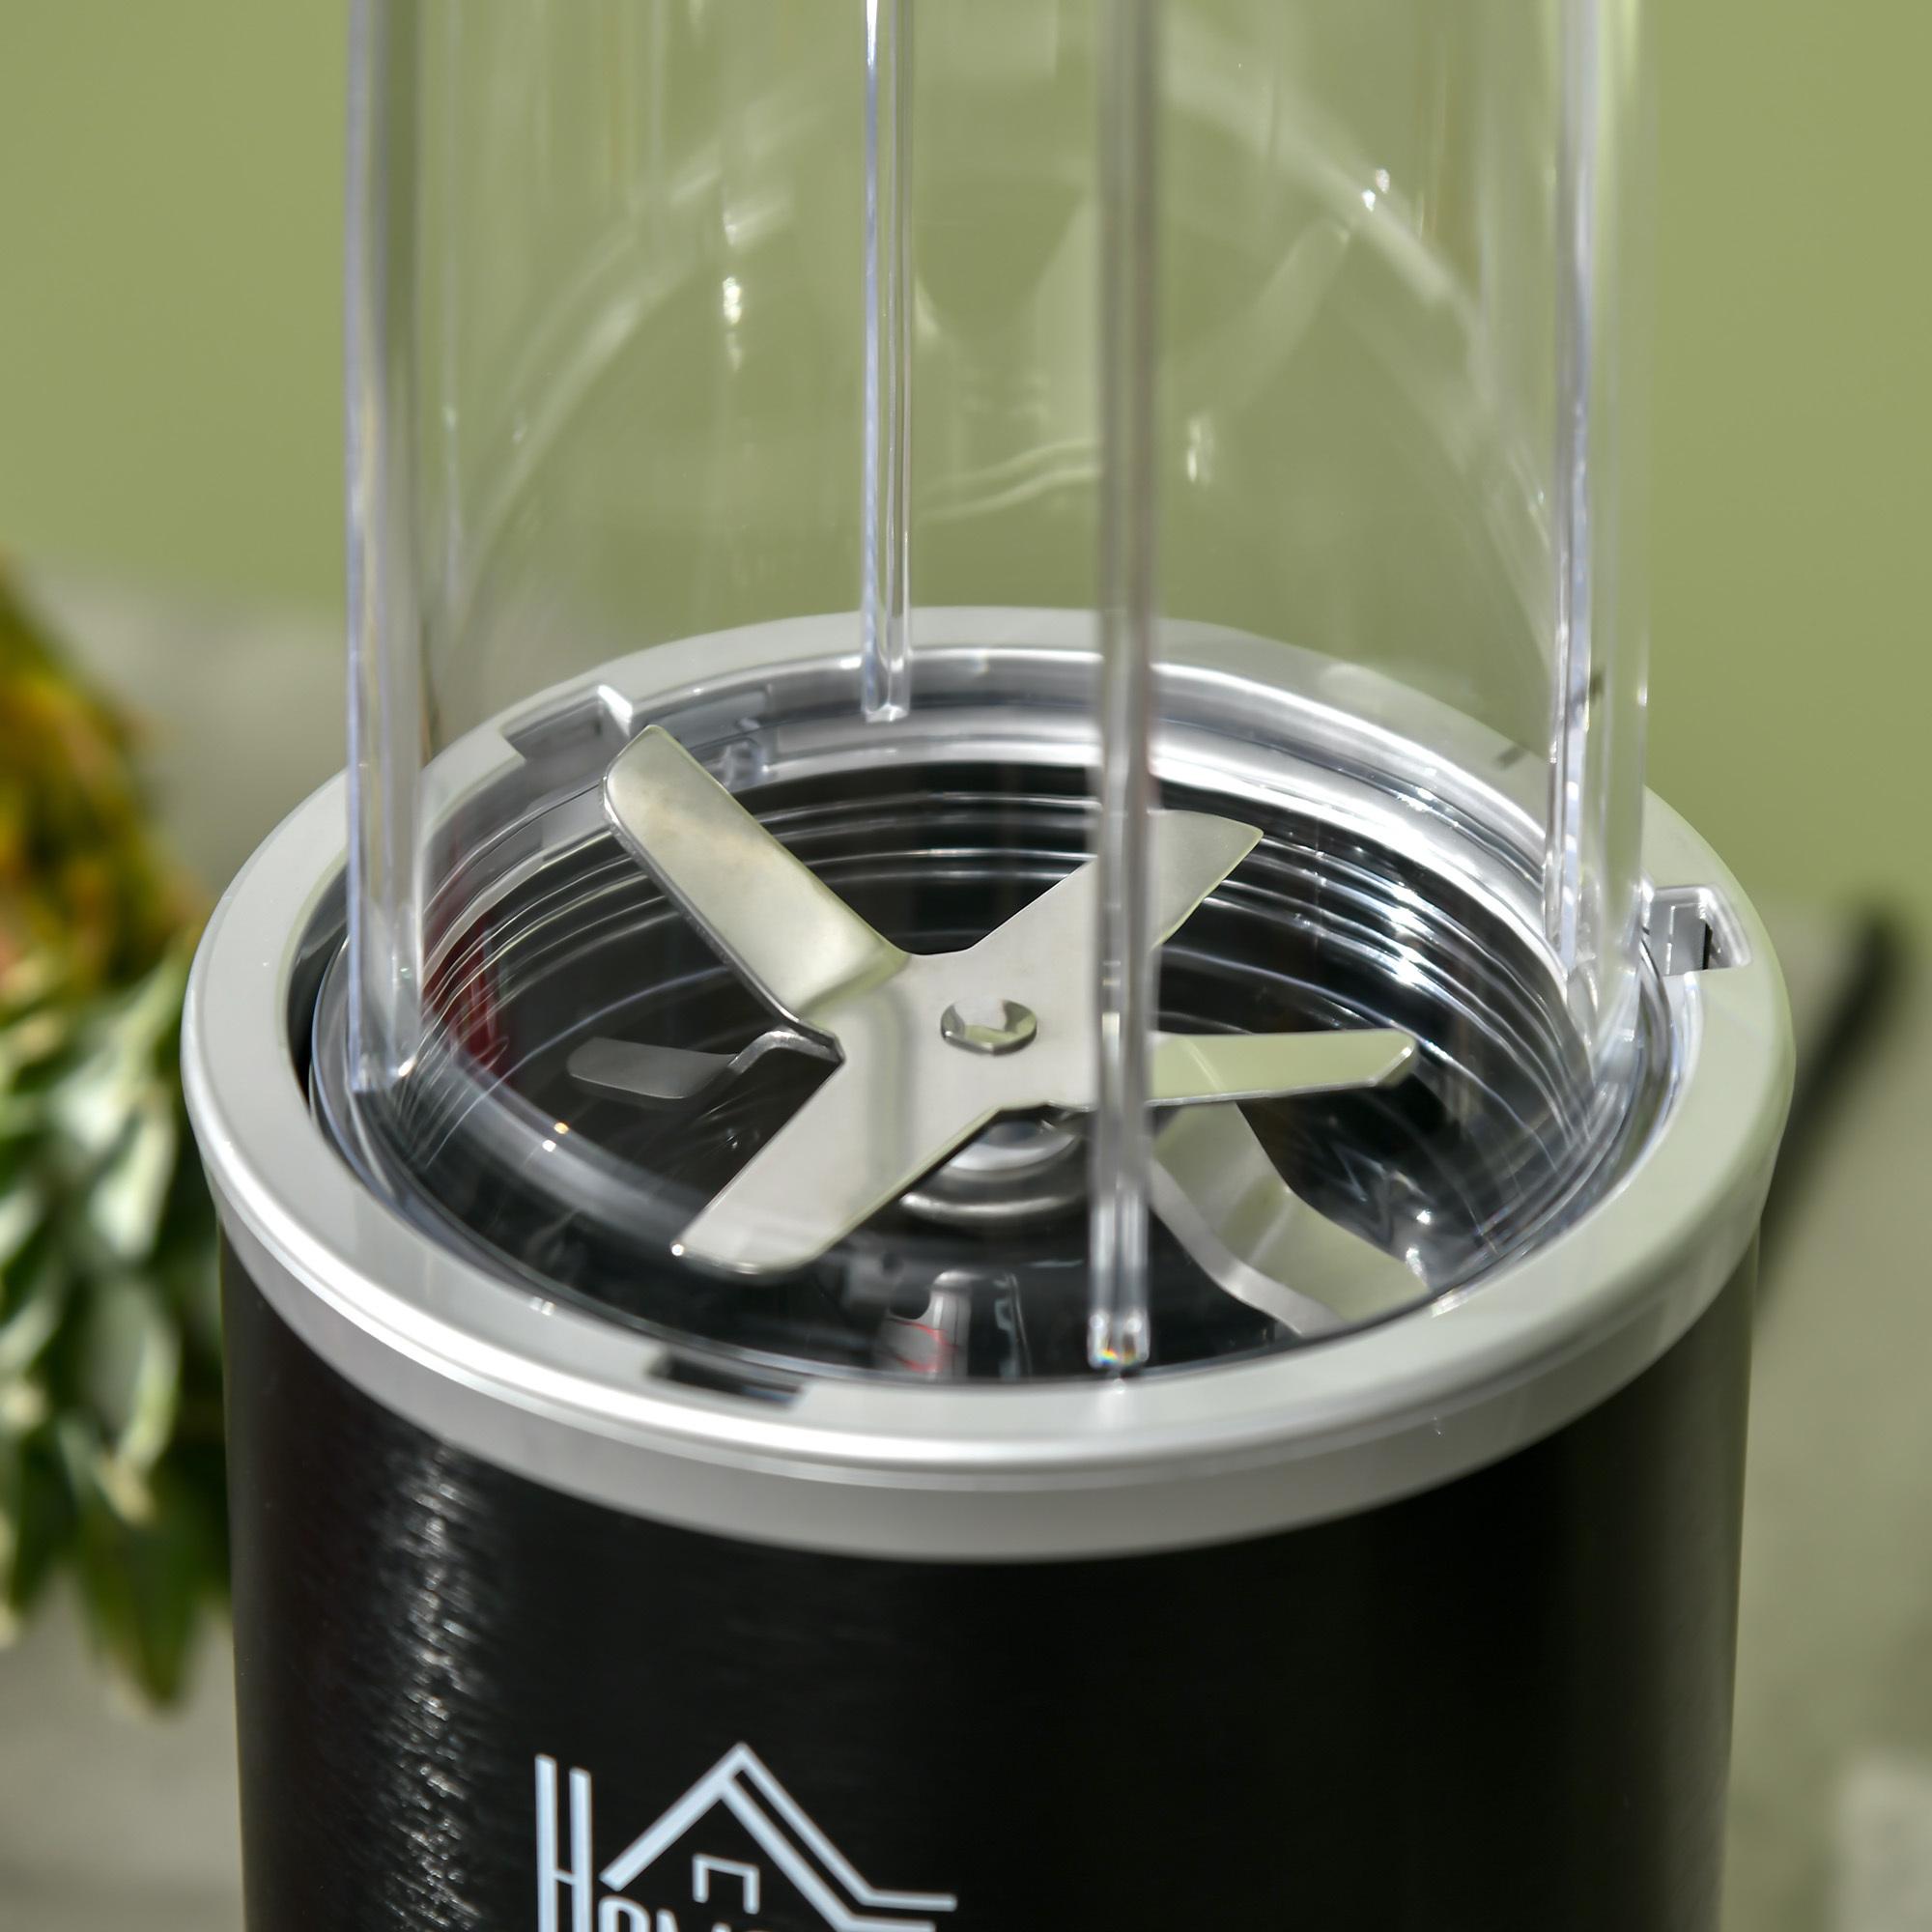 Blender 1000 W - 4 modes - 2 bols 700 ml et 350 ml - système verrouillage sécurité - nettoyage facile - alu. tritan noir